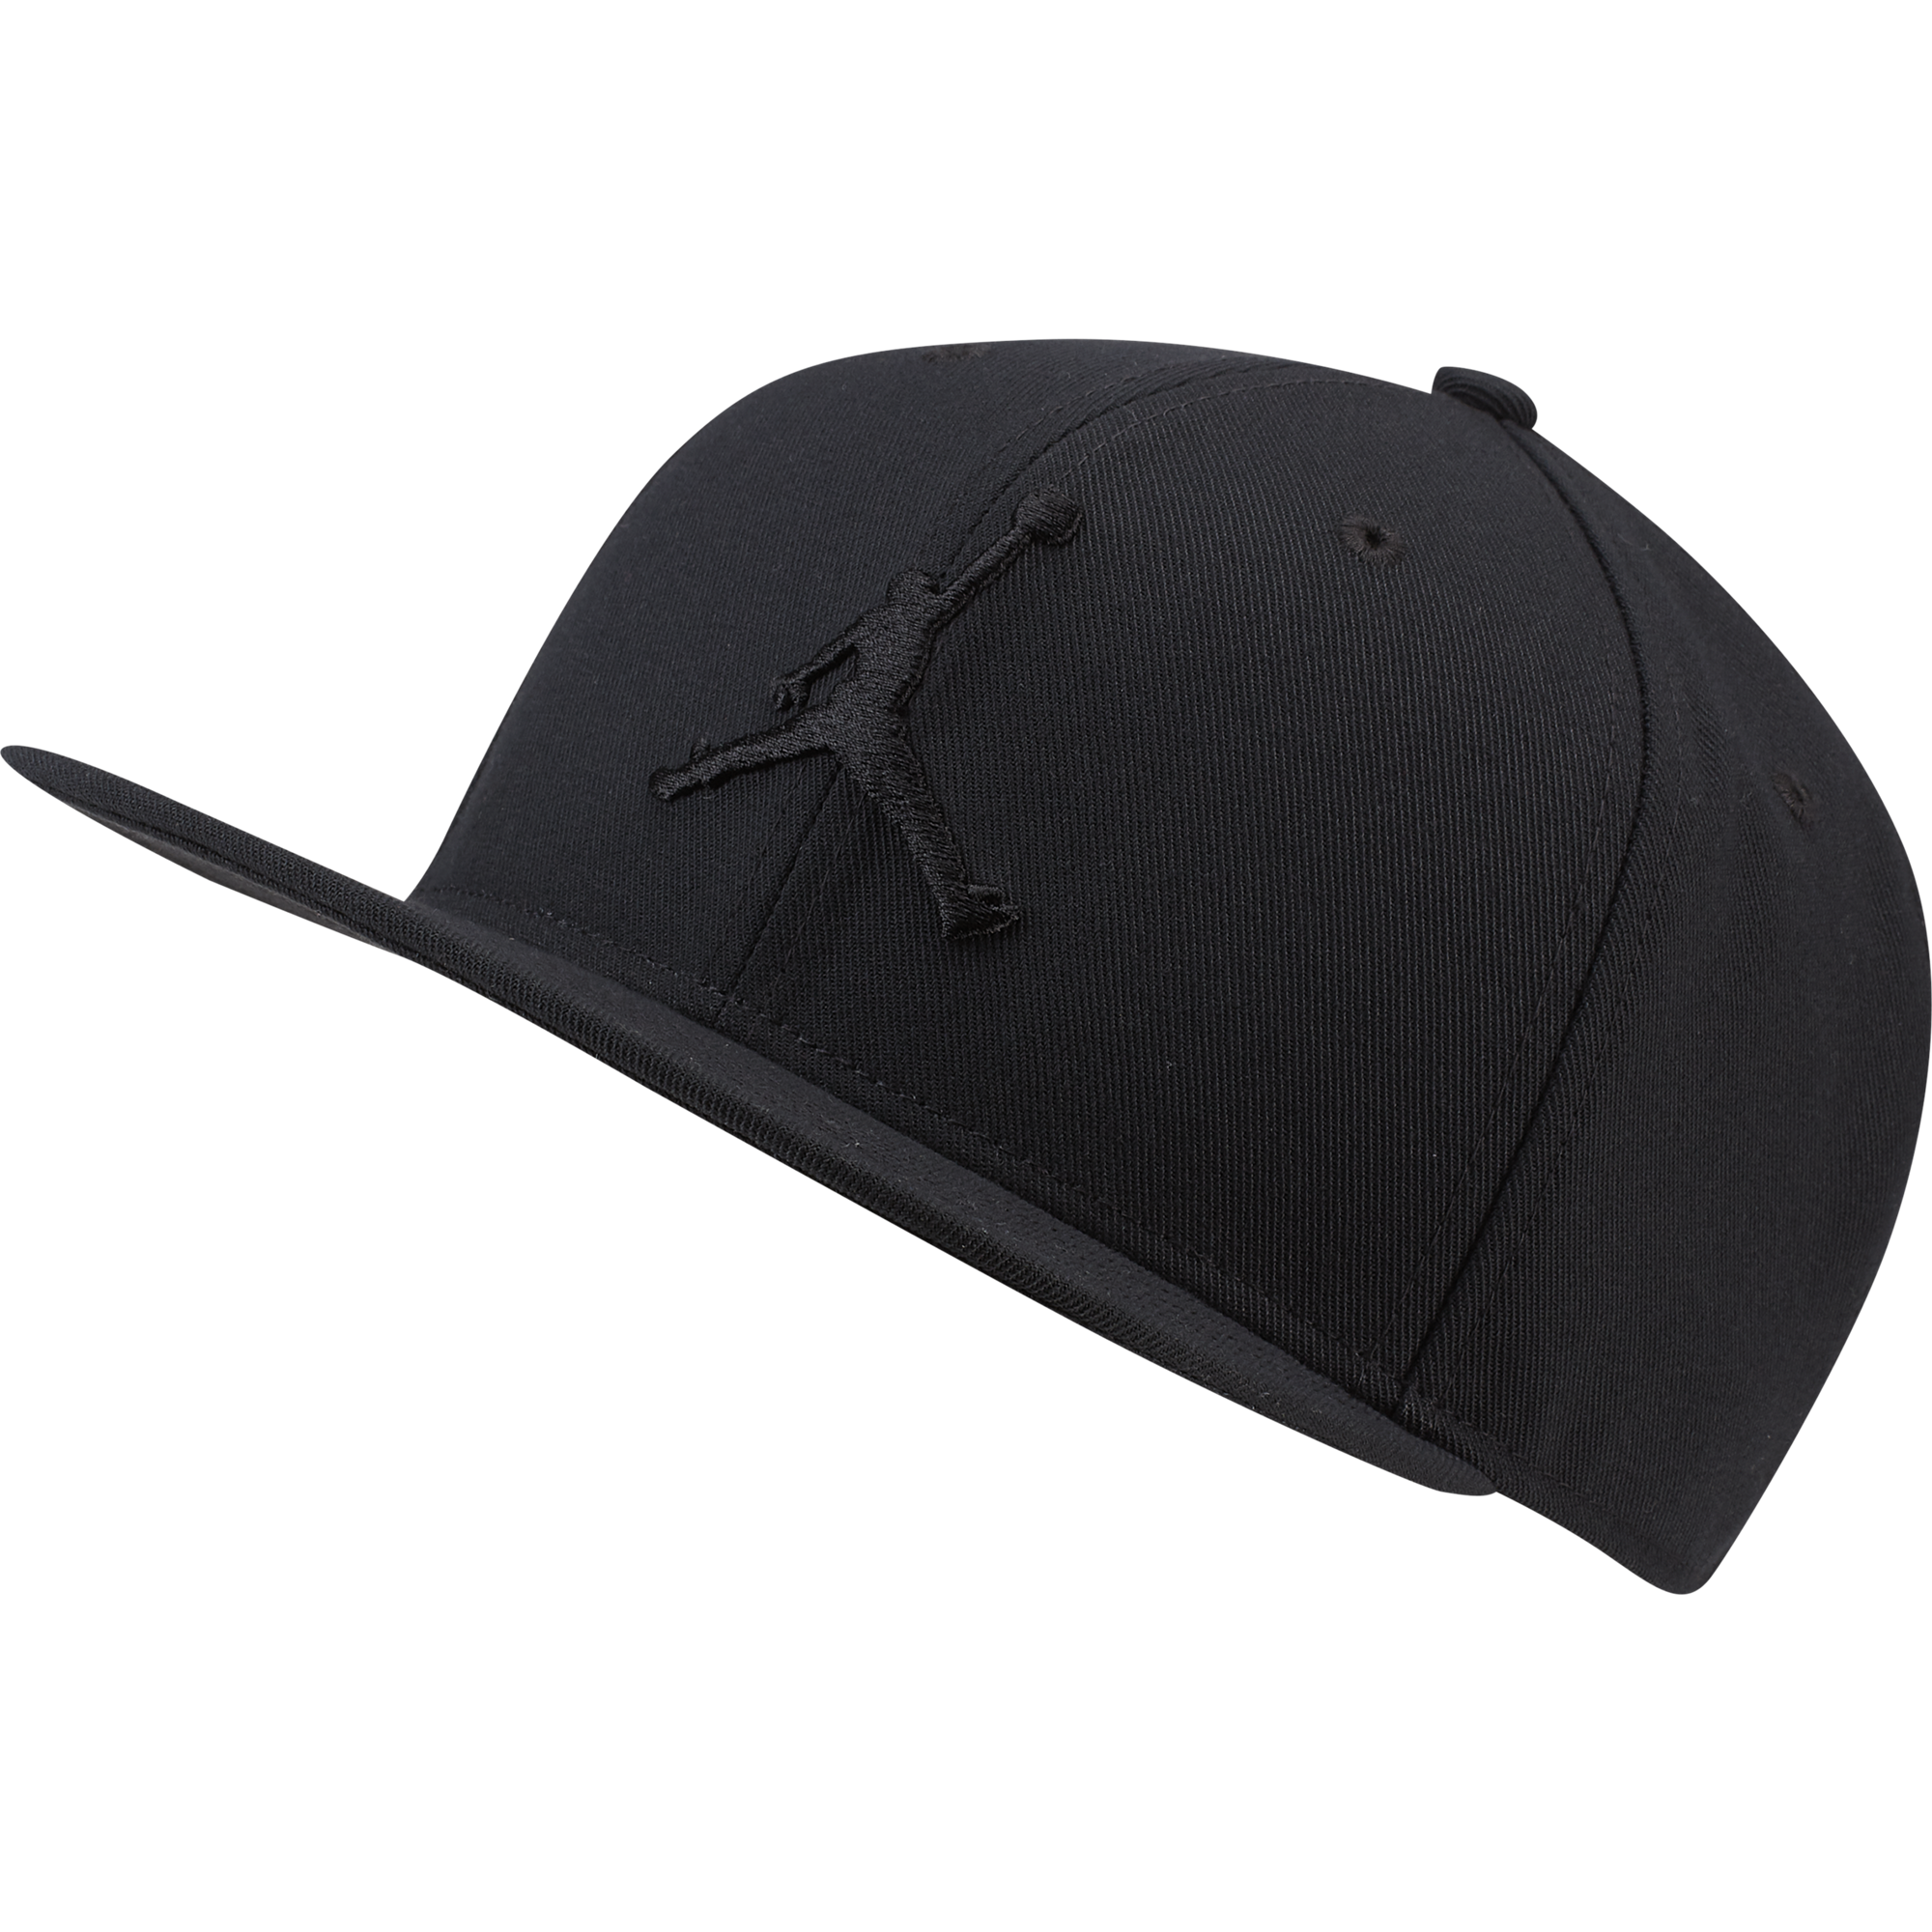 black and grey jordan hat